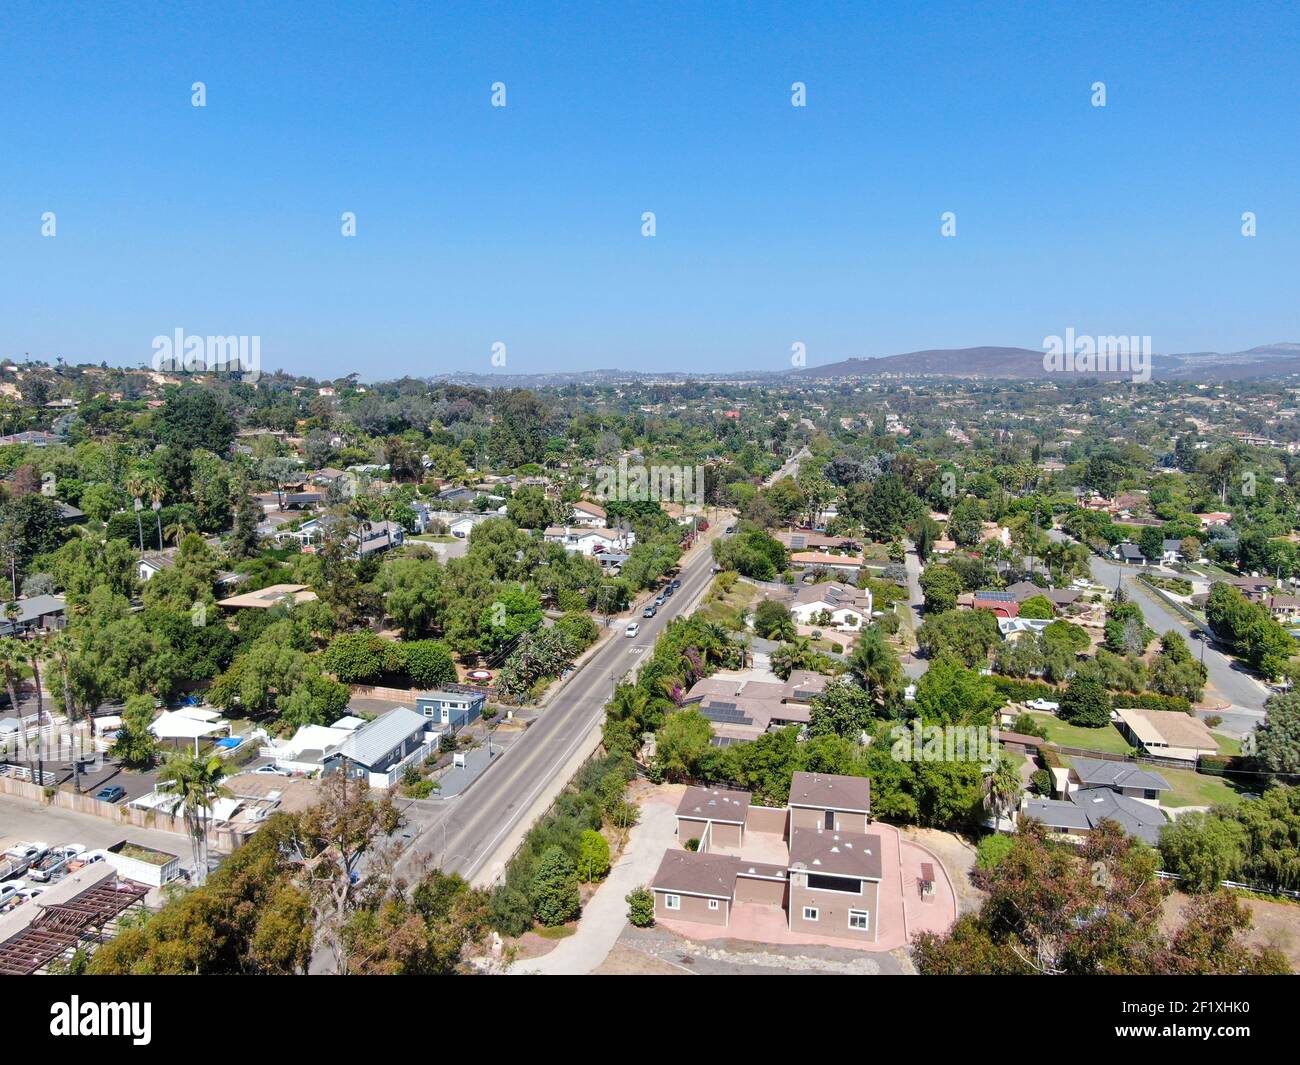 Vista aerea di una ricca villa residenziale su larga scala nella California del Sud Foto Stock